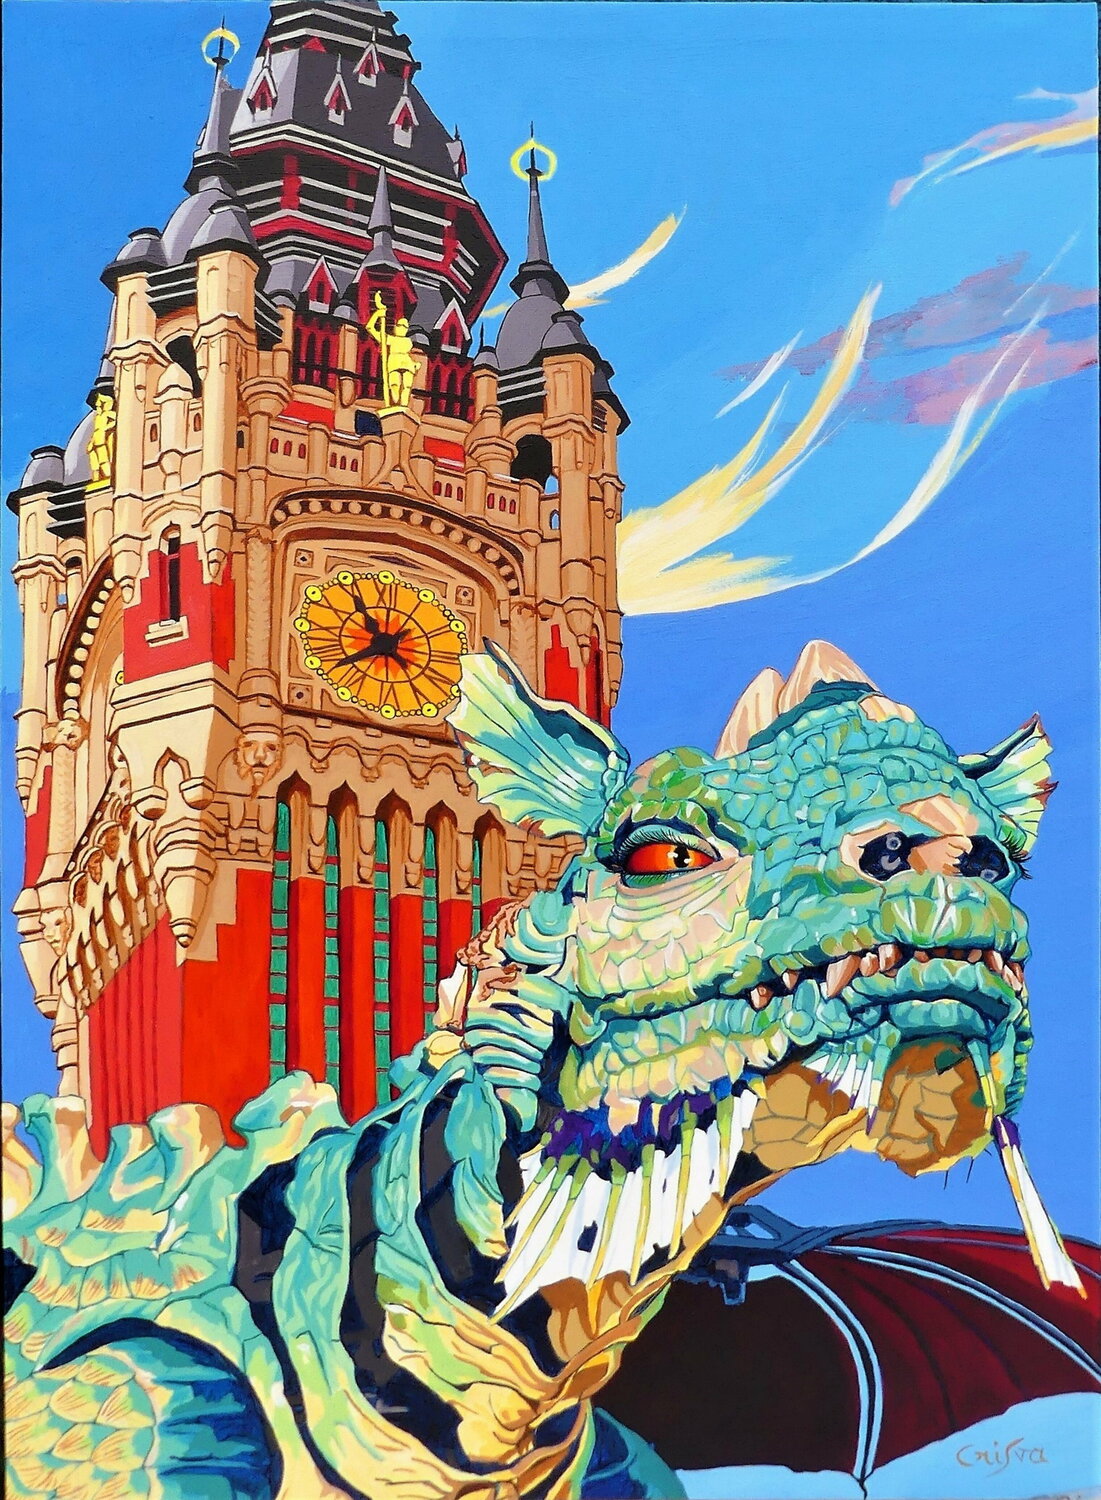 Calais' dragon